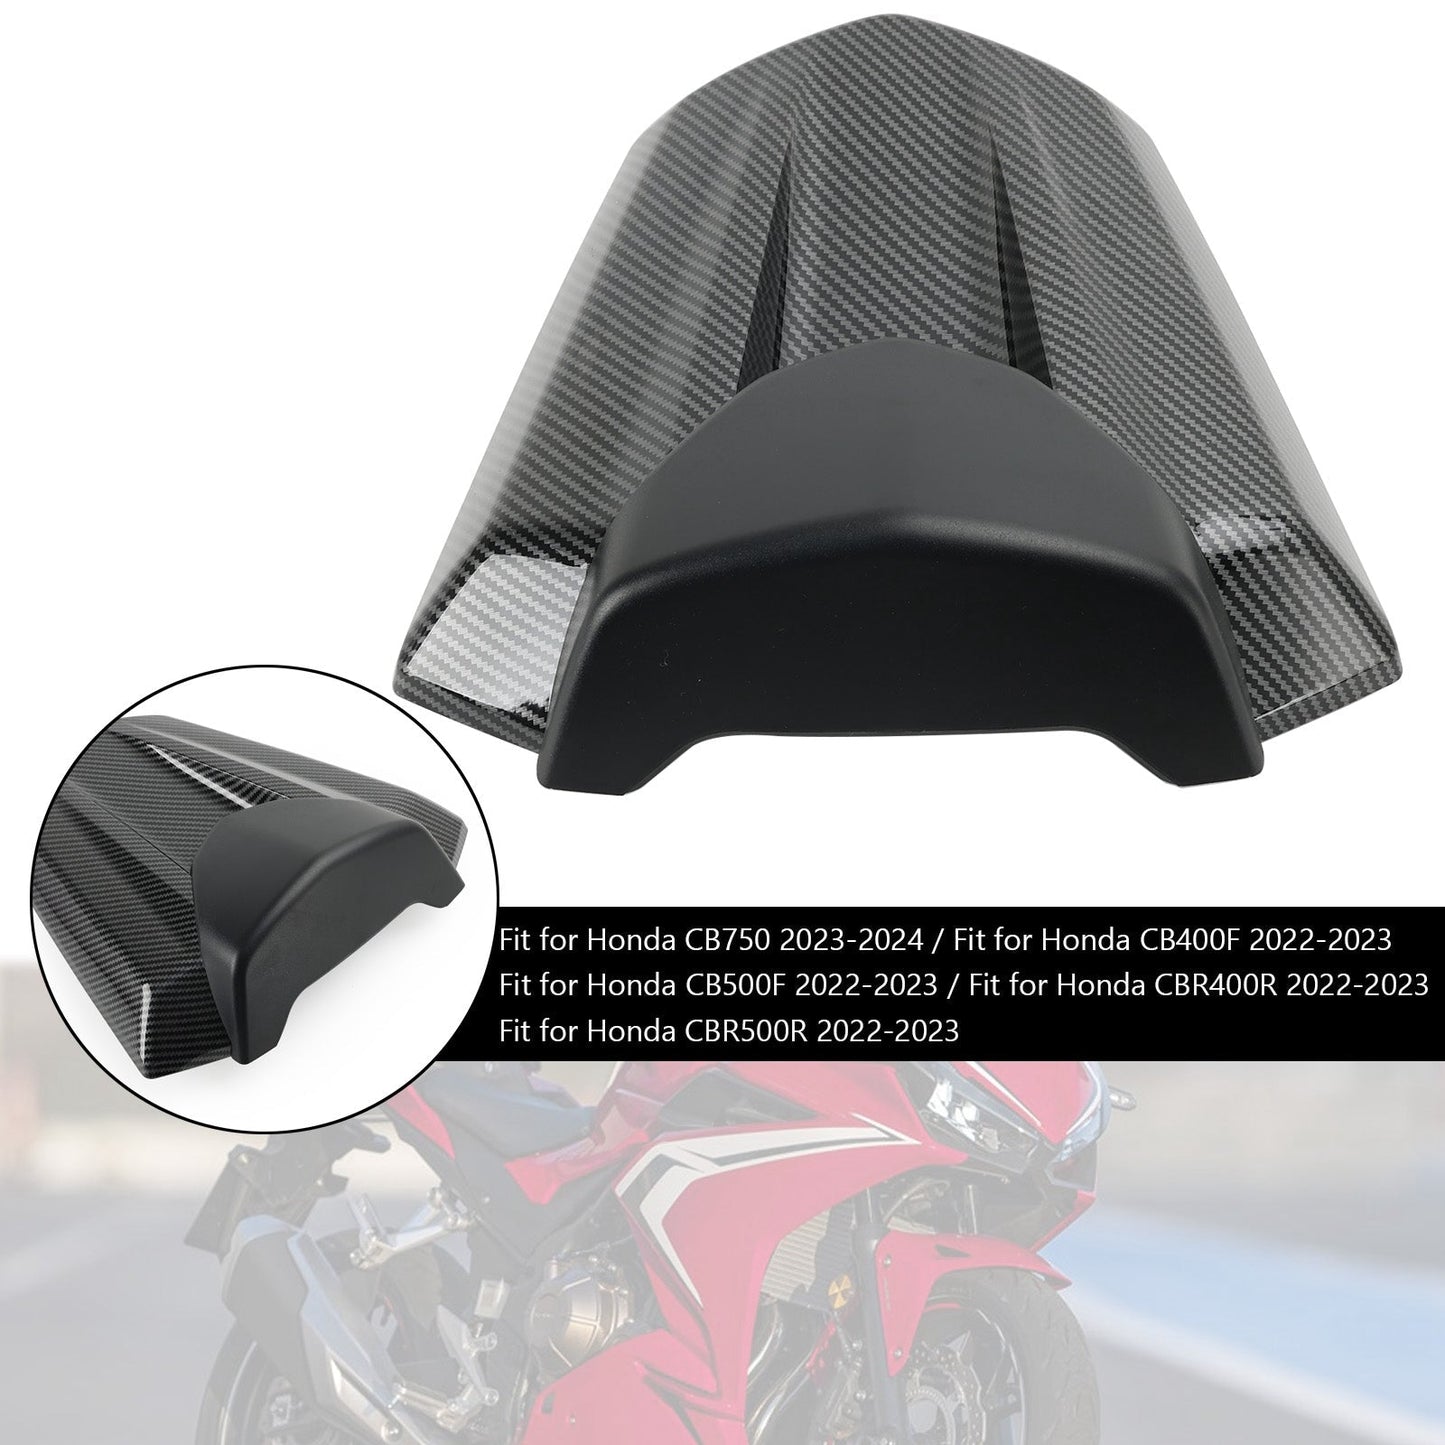 2022-2023 Honda CBR500R Rear Tail Seat Fairing Cover